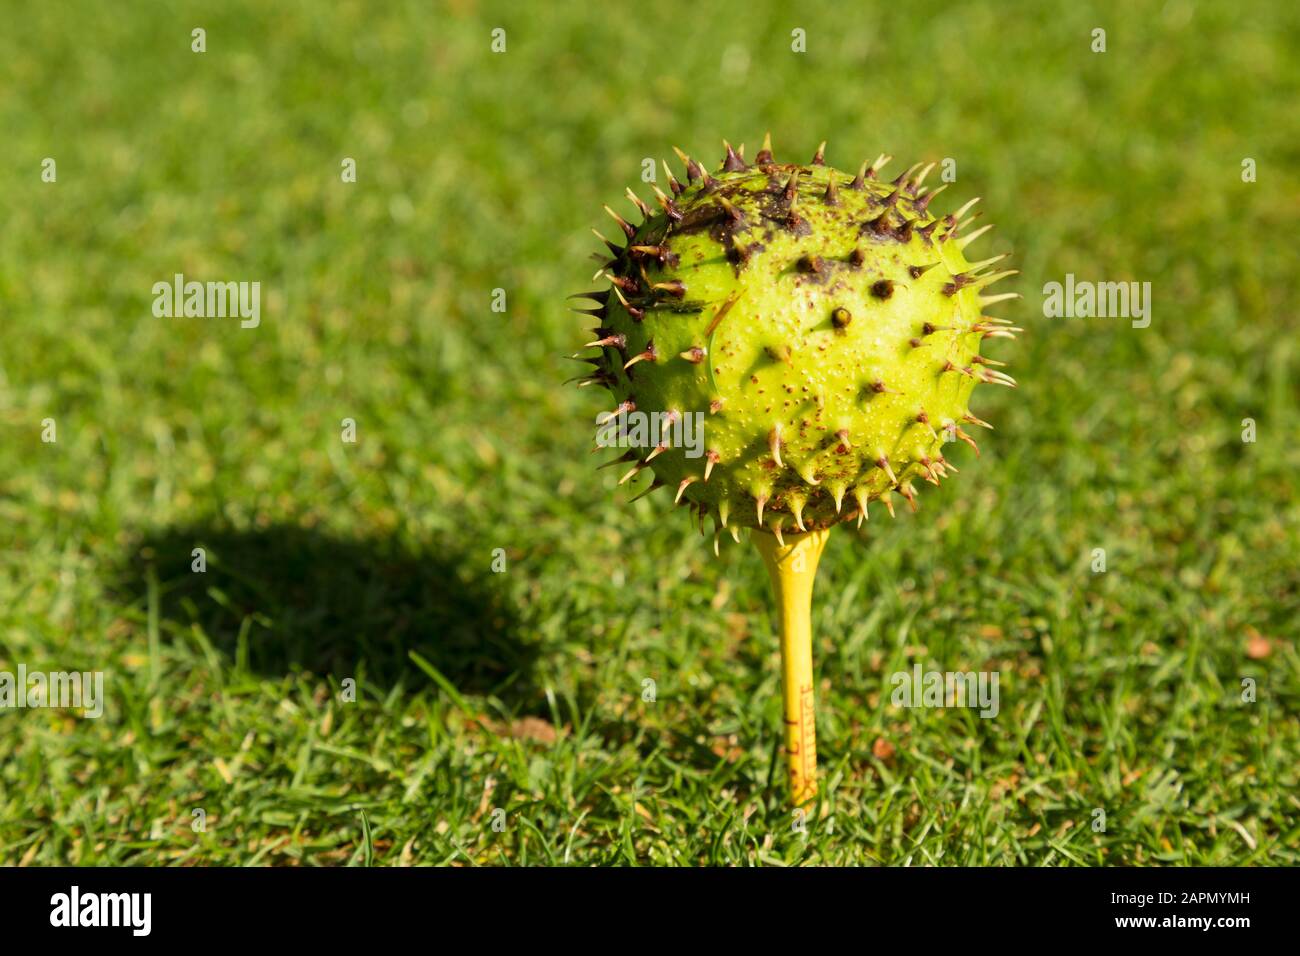 Chestnut on golf tee, Autumn sport. Stock Photo